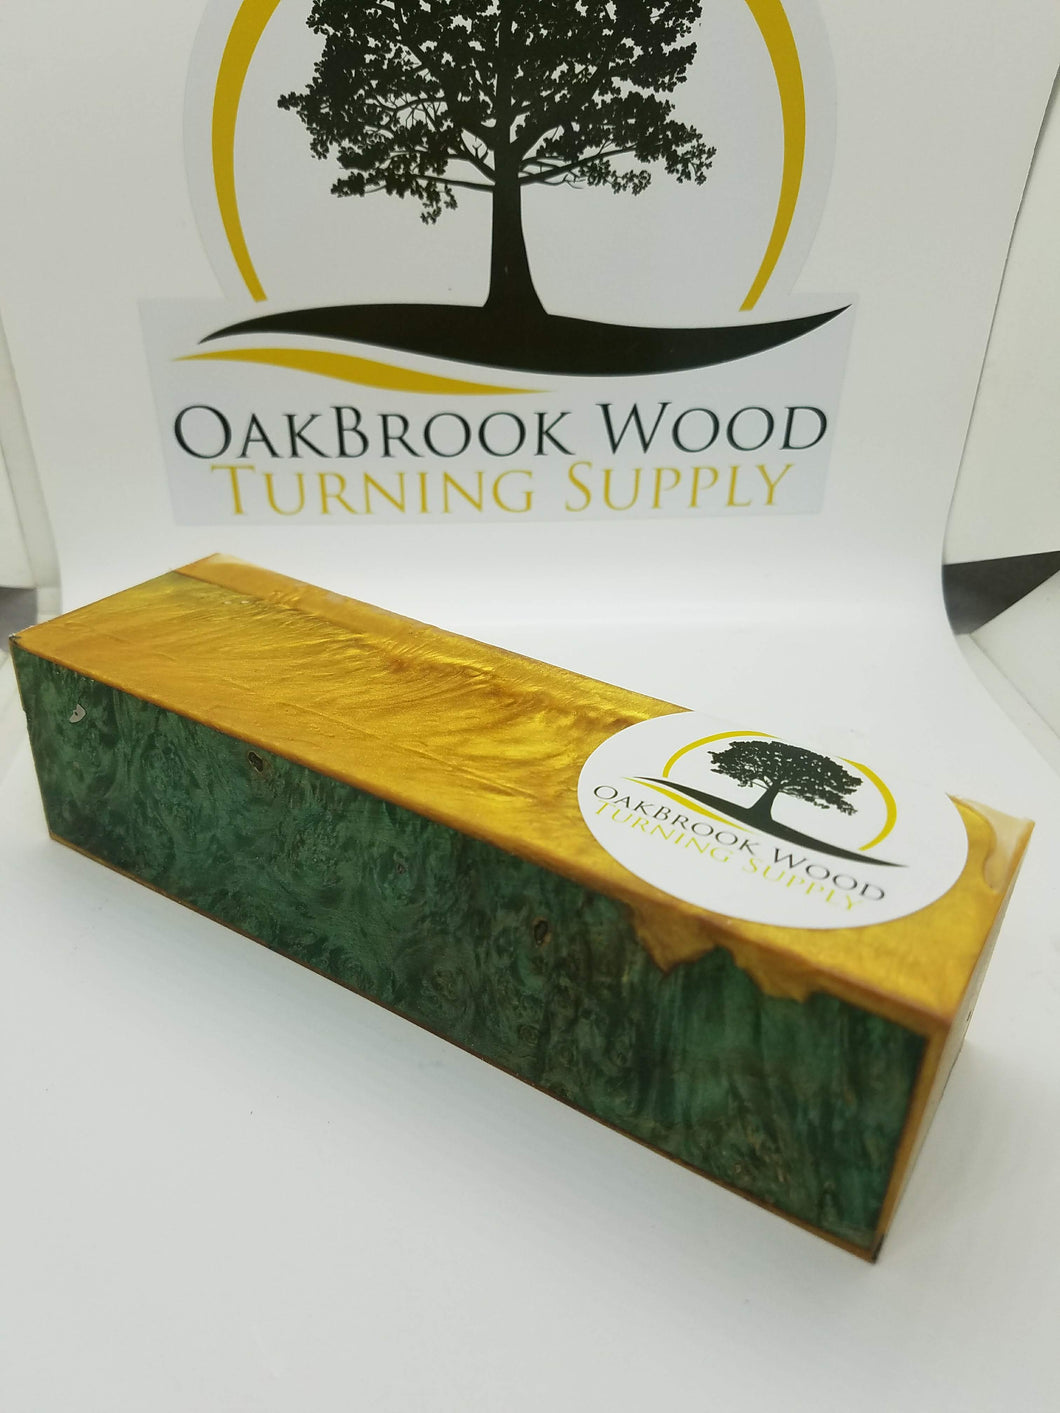 Call blocks hybrid - Oakbrook Wood Turning Supply